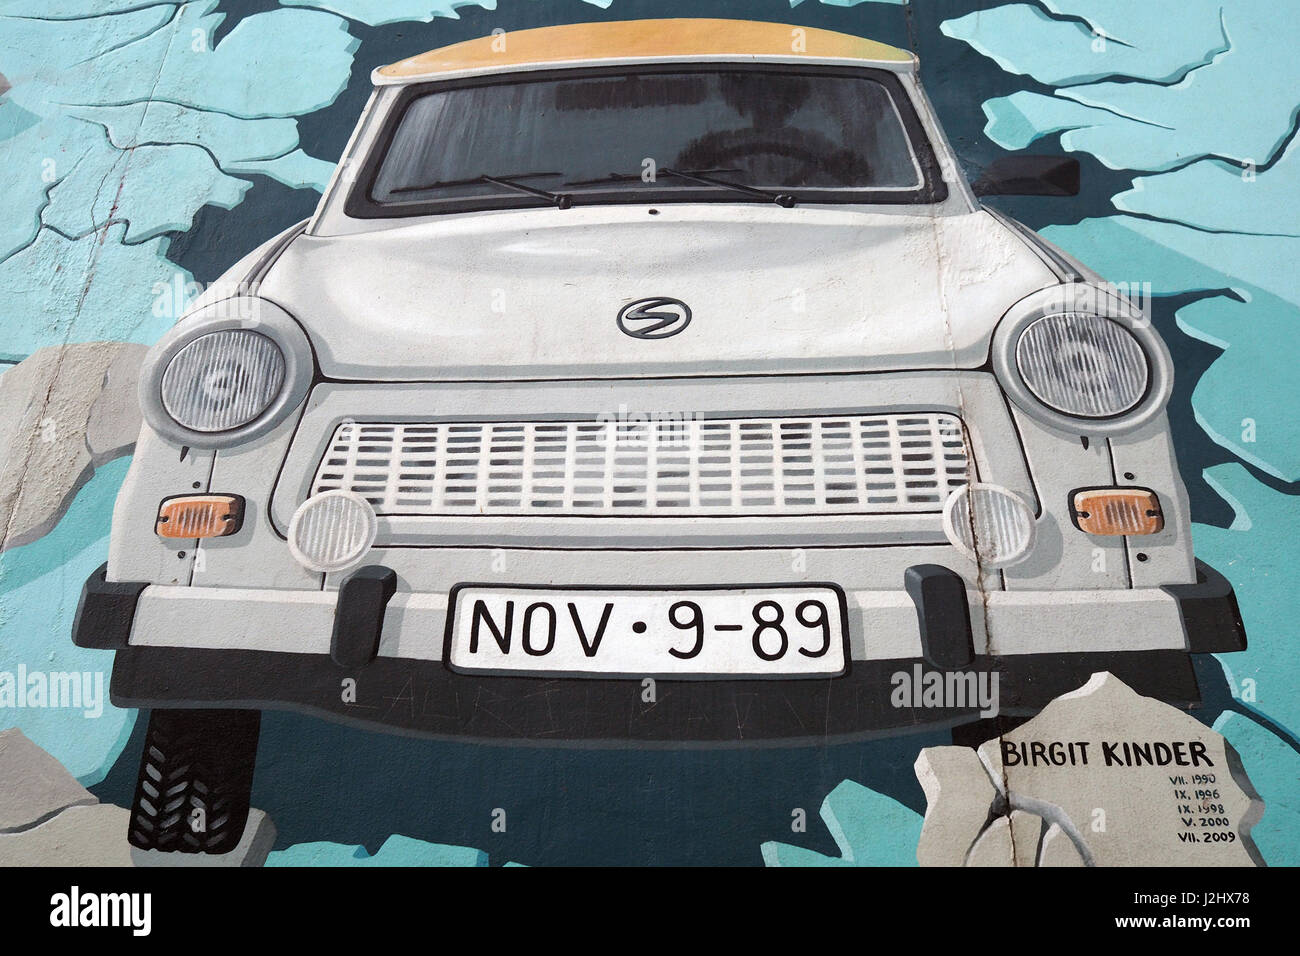 Graffiti raffiguranti la Trabant,l'auto più popolari in Germania est,nella famosa sezione del muro di Berlino (Berliner Mauer) denominata "East side gallery" Foto Stock